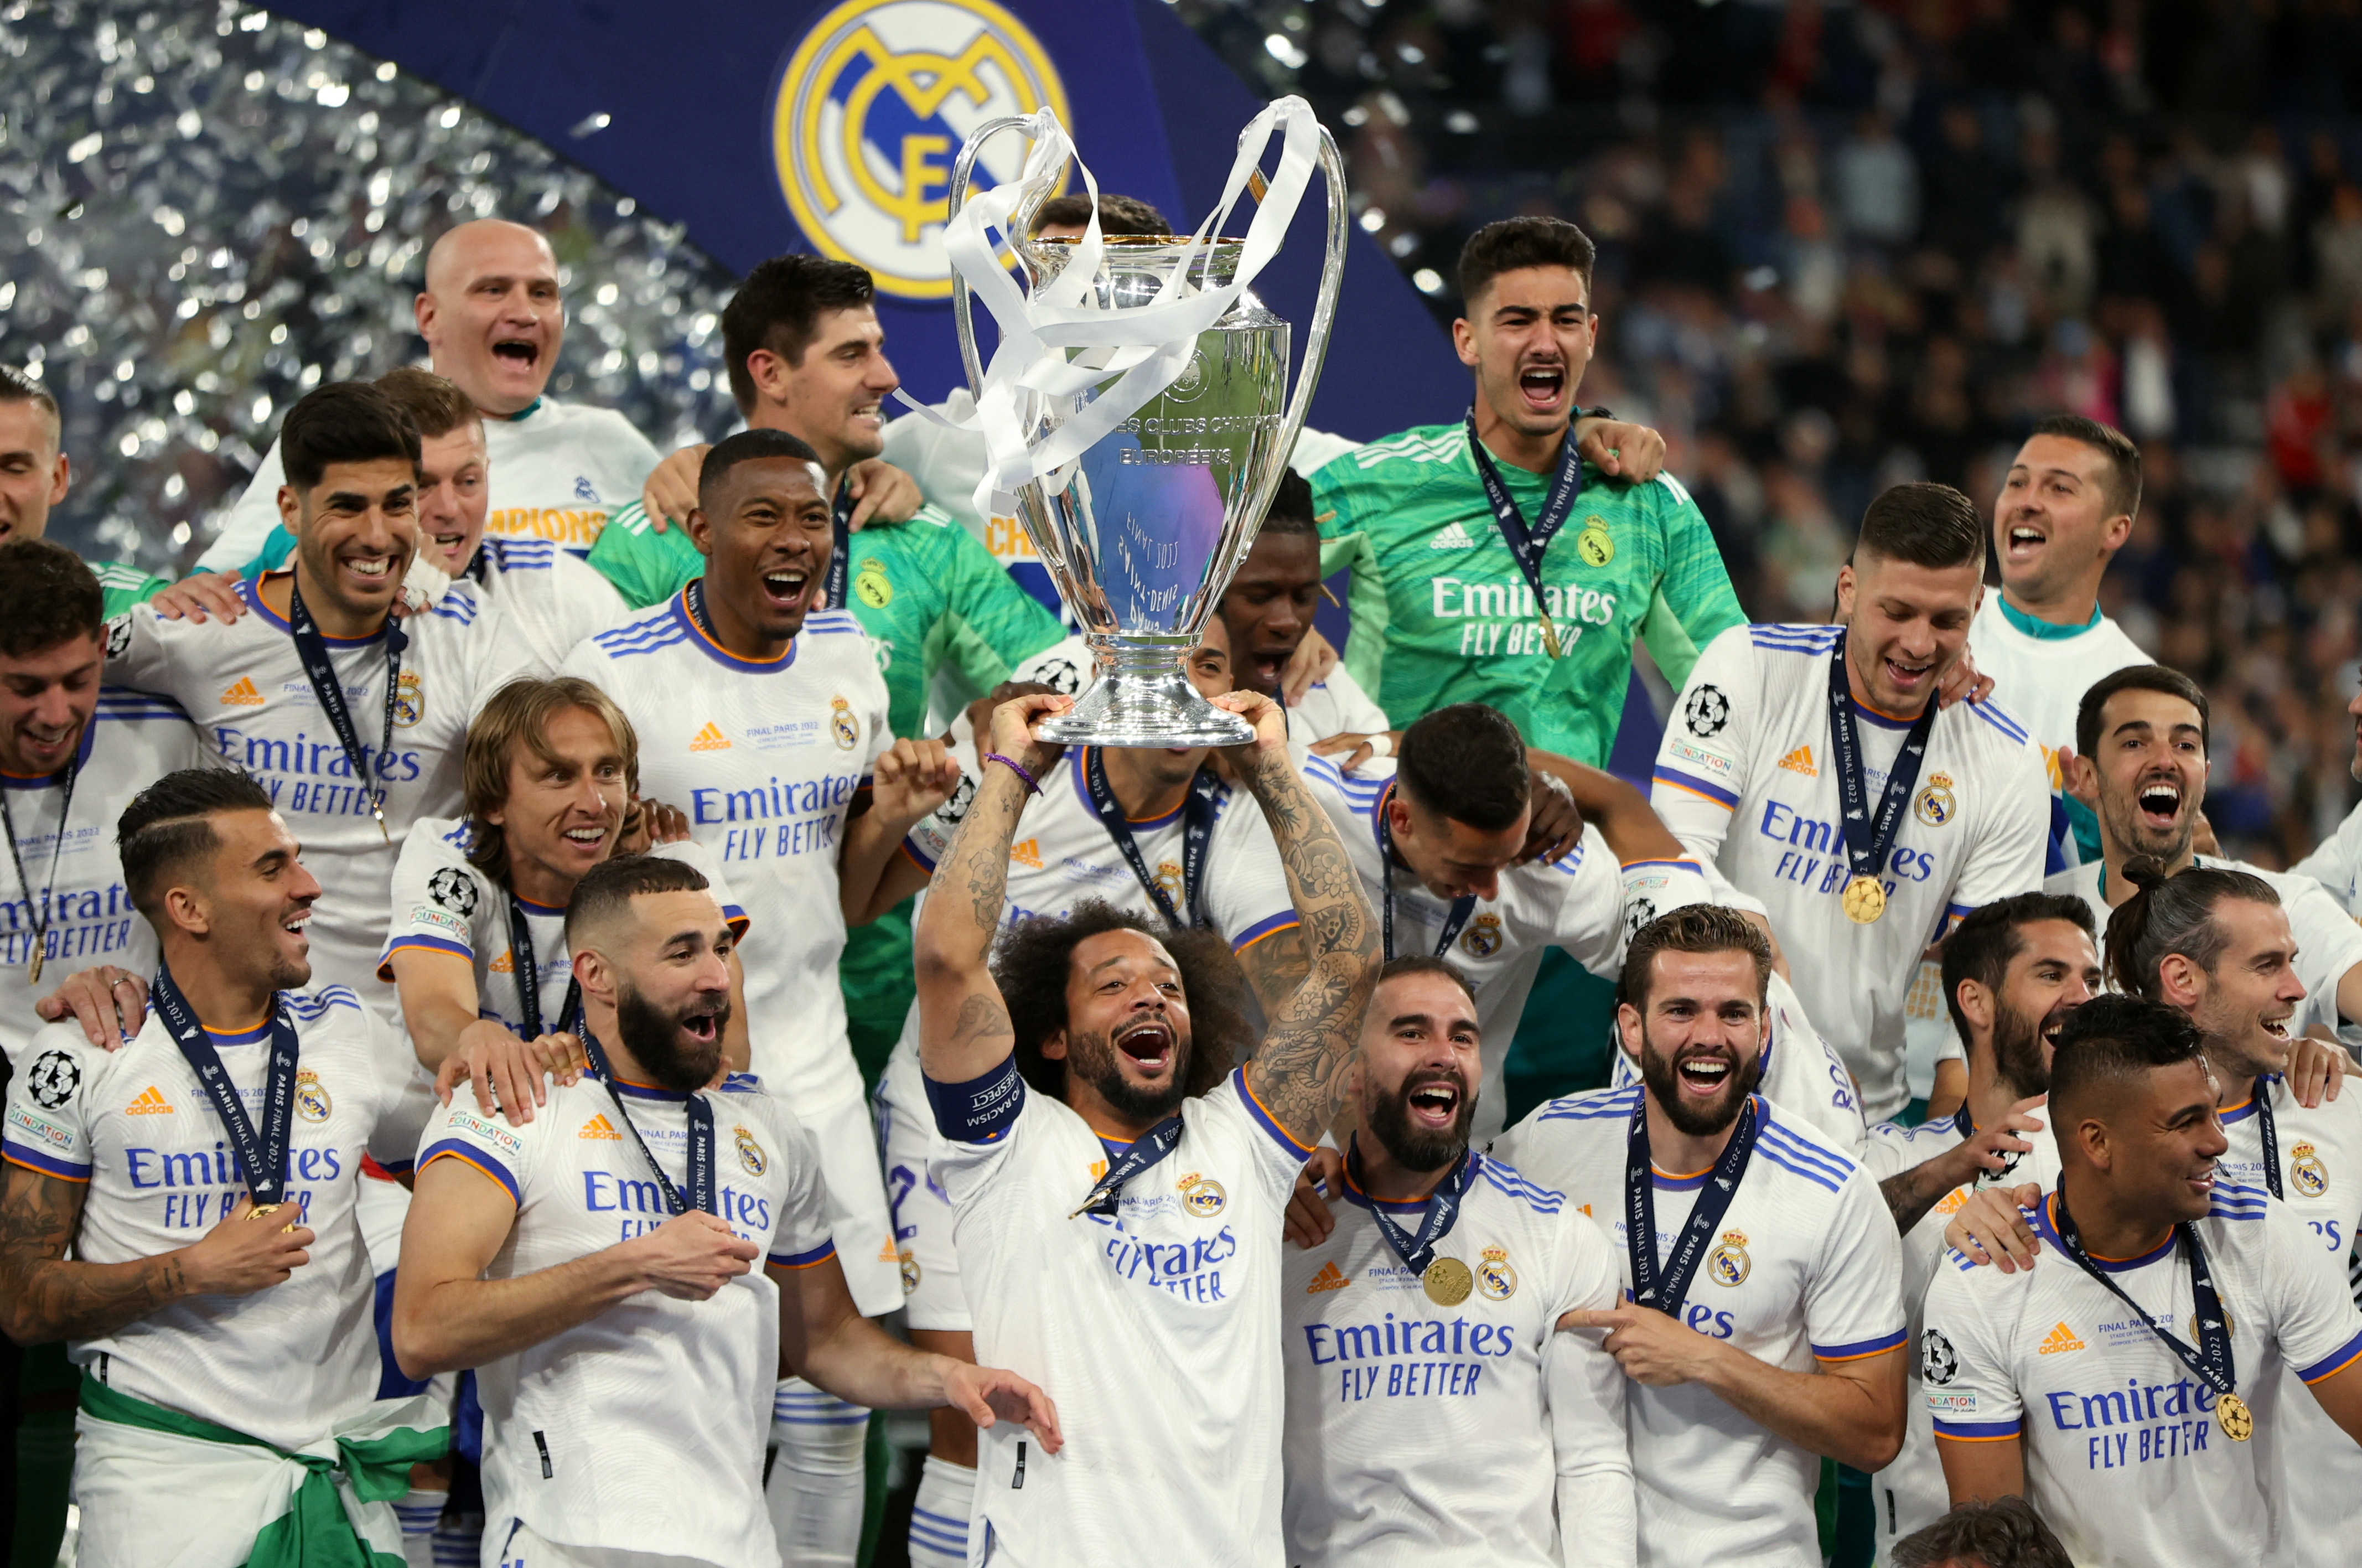 Real Madrid se coronó campeón de la Champions League y obtiene el título 14 en este certamen. Foto: REUTERS/Molly Darlington